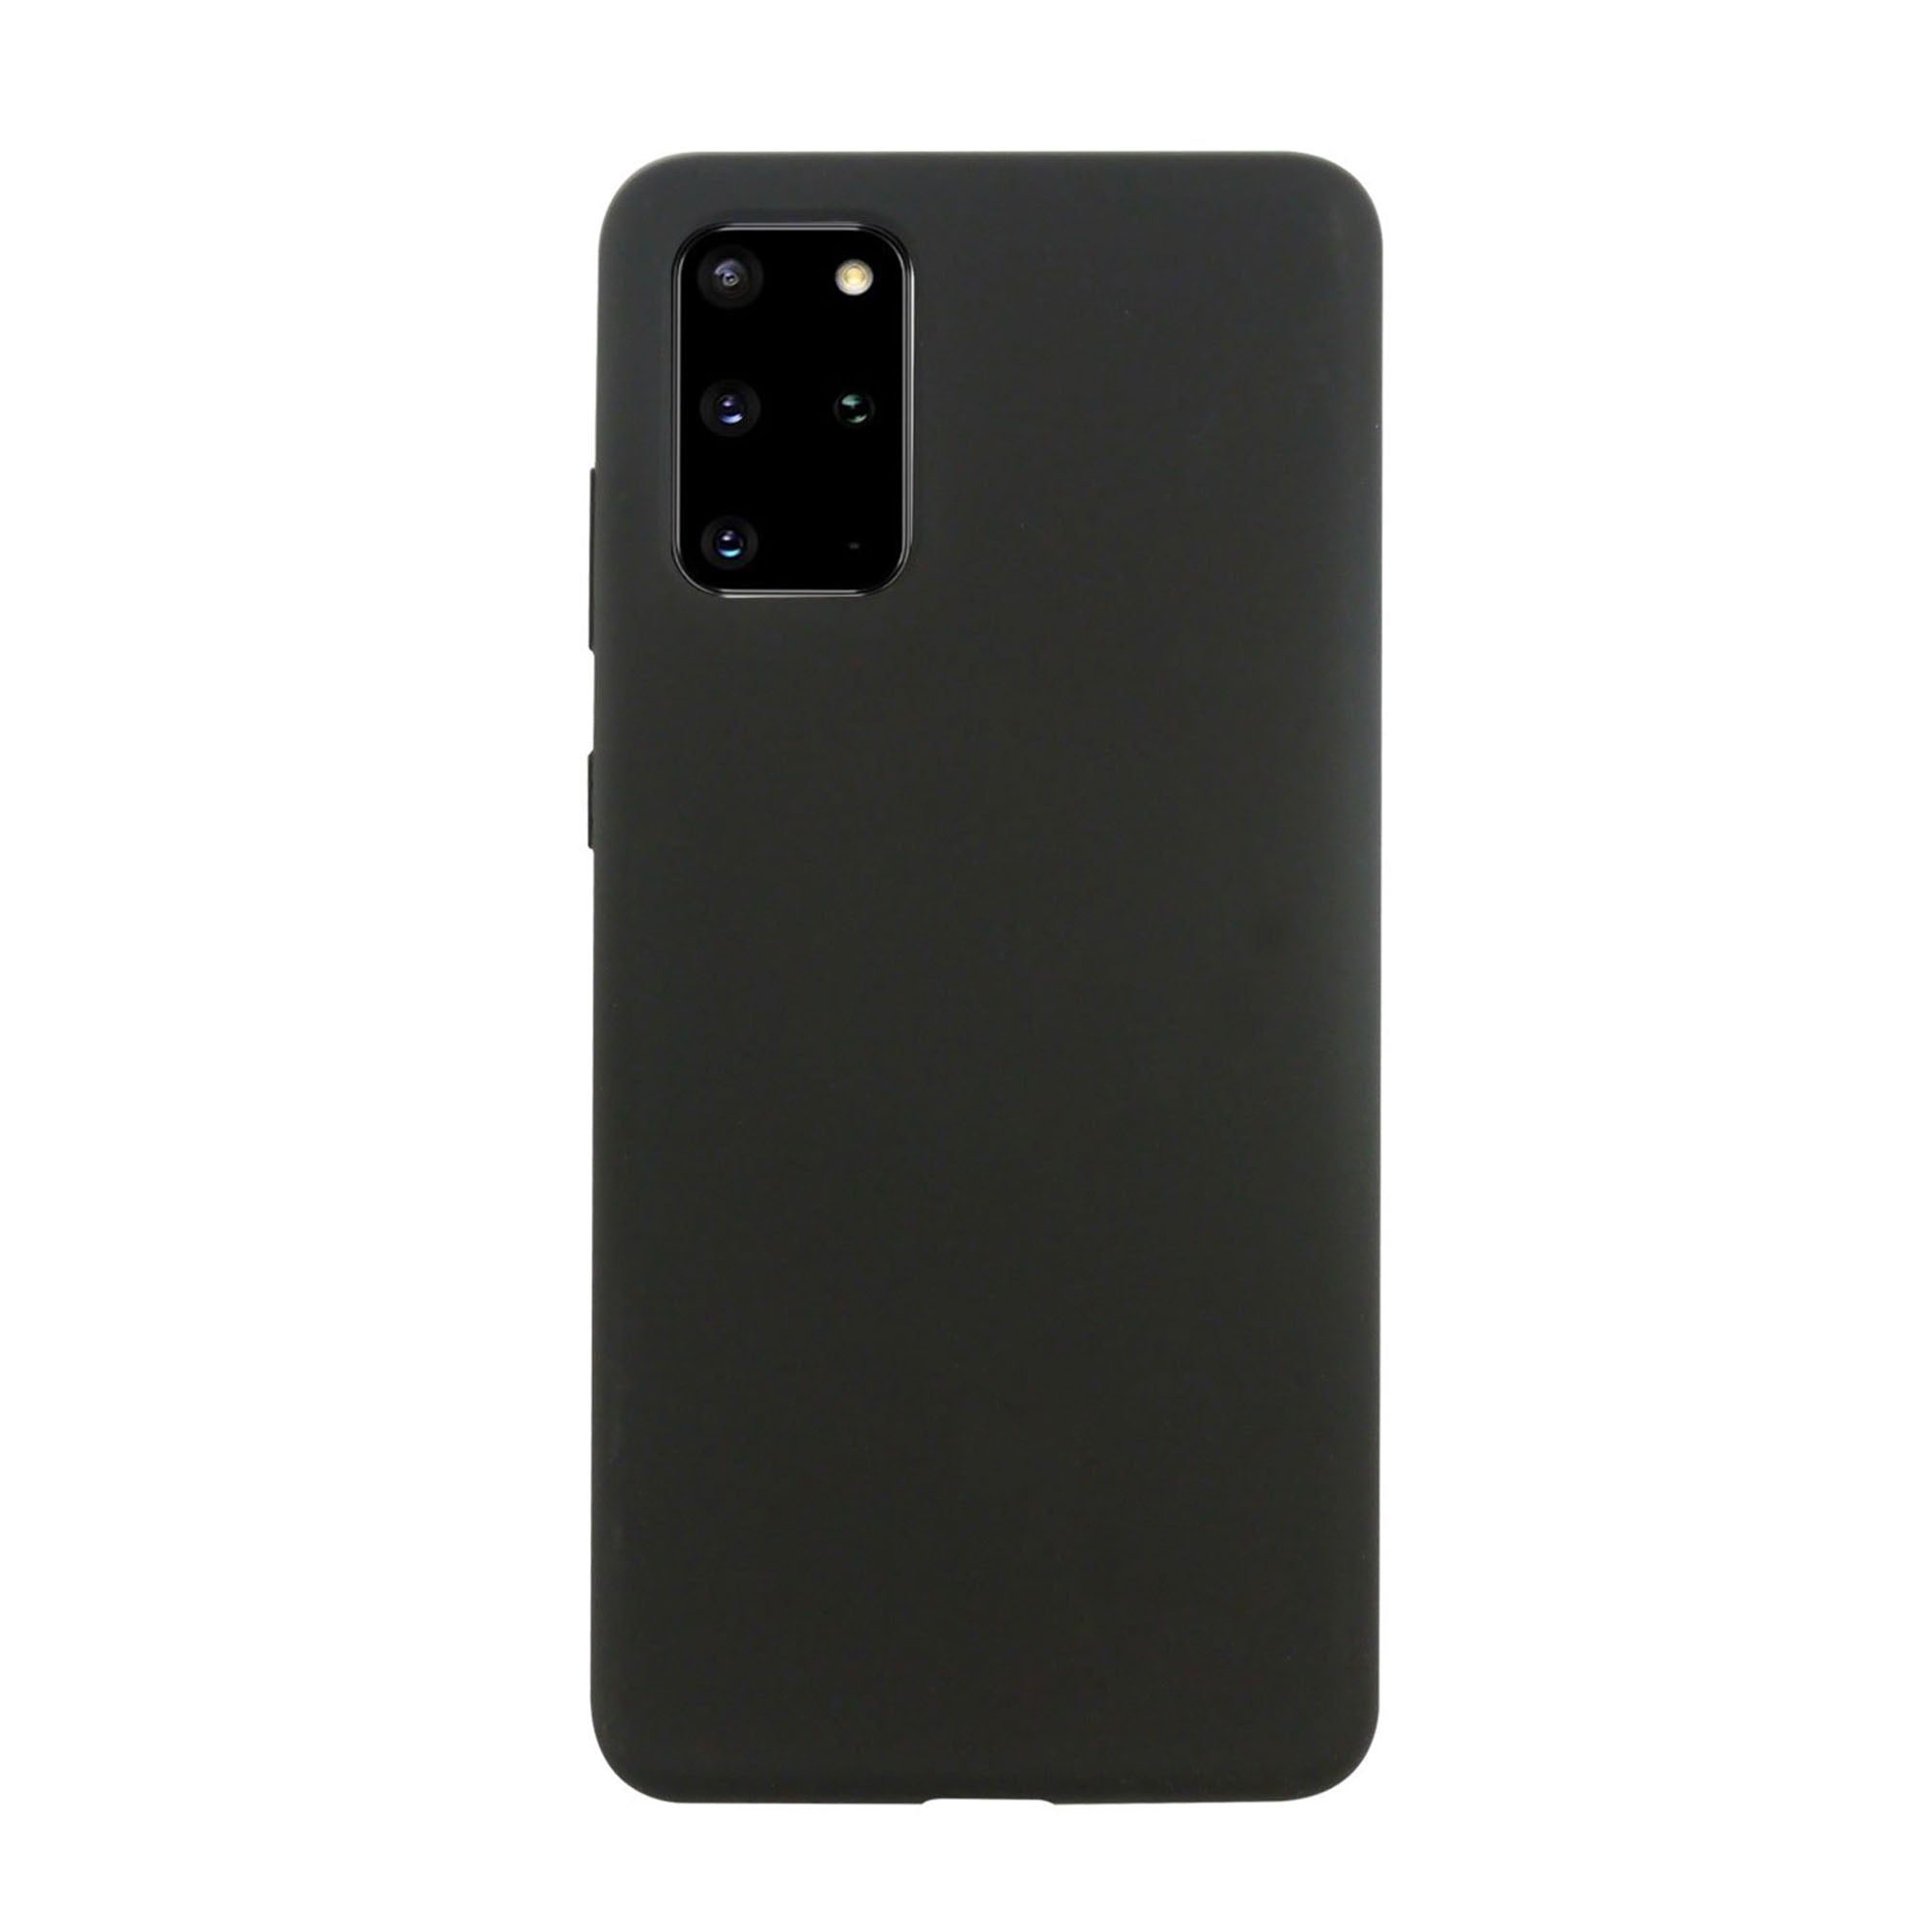 Samsung Galaxy S20+ 5G Uunique Black Liquid Silicone Case - 15-06632